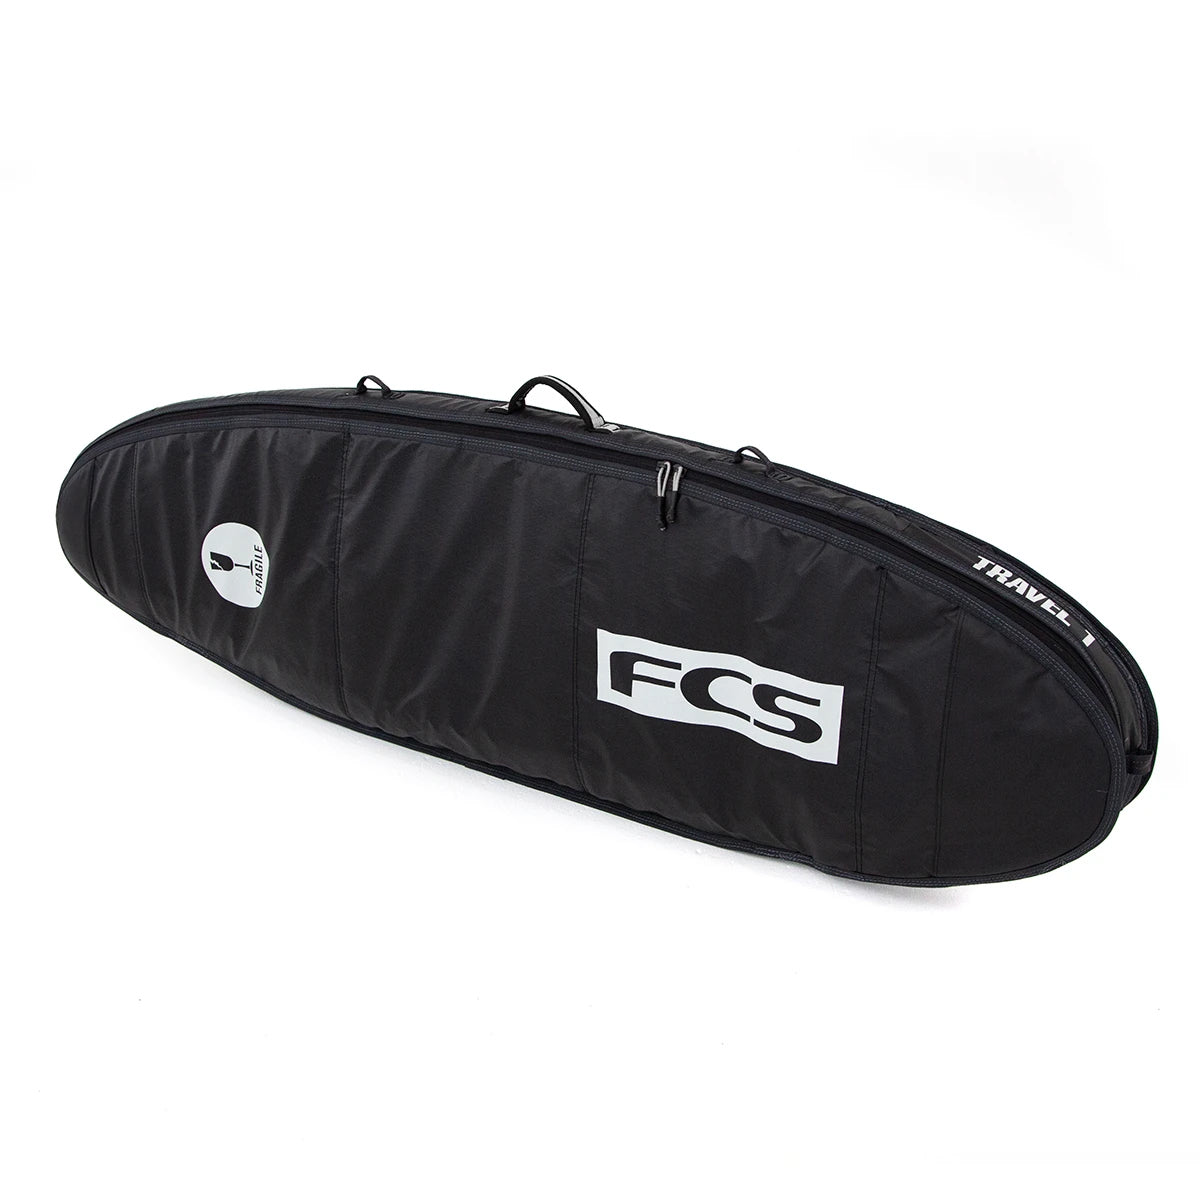 FCS Travel 1 Funboard Boardbag Black-Grey 5ft9in